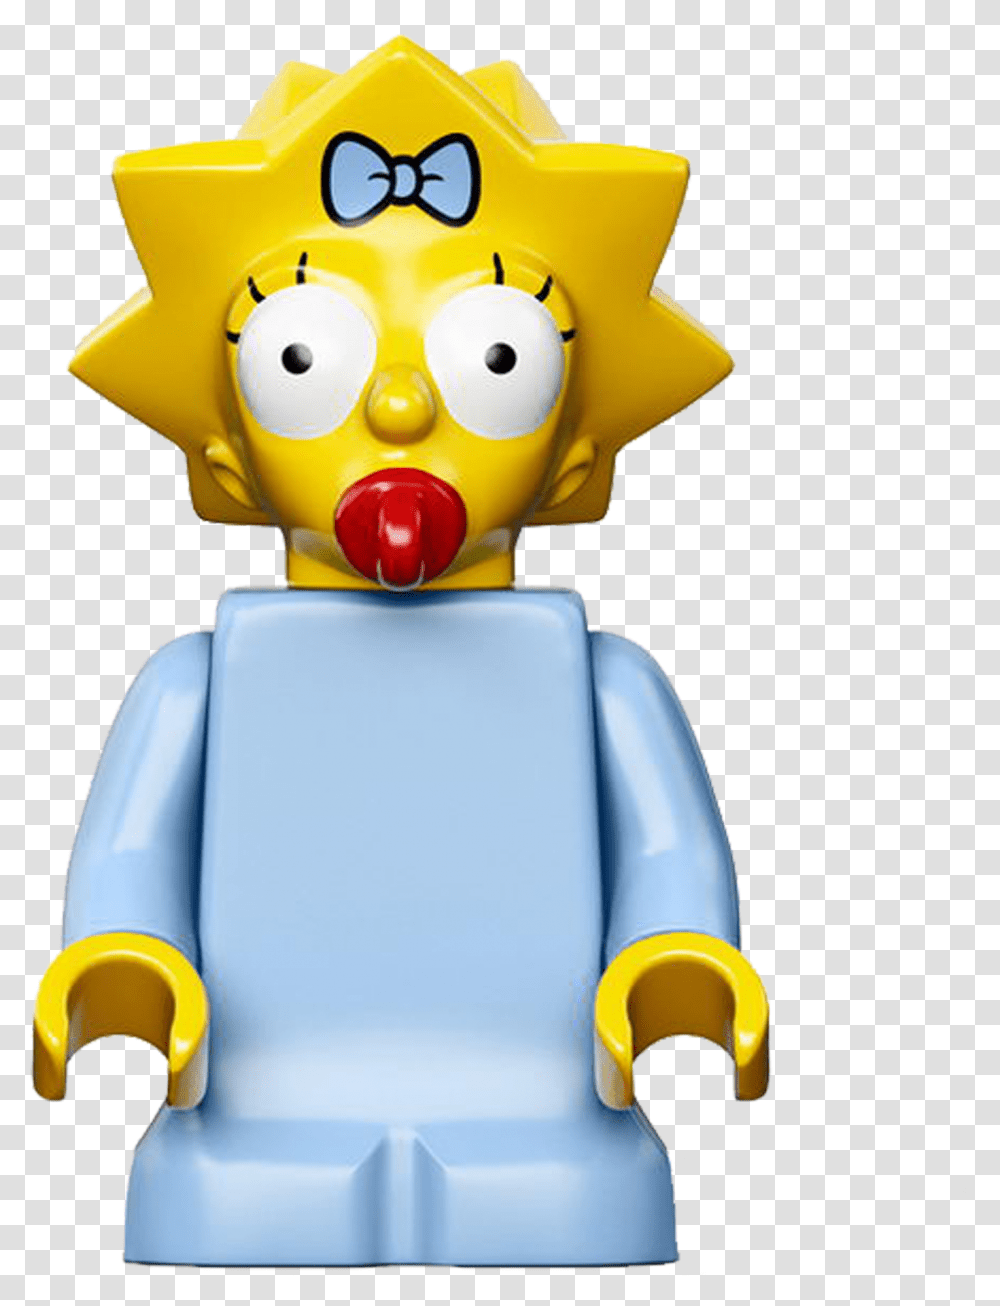 Homer Marge Bart Lisa Simpson Lego, Toy, Robot Transparent Png